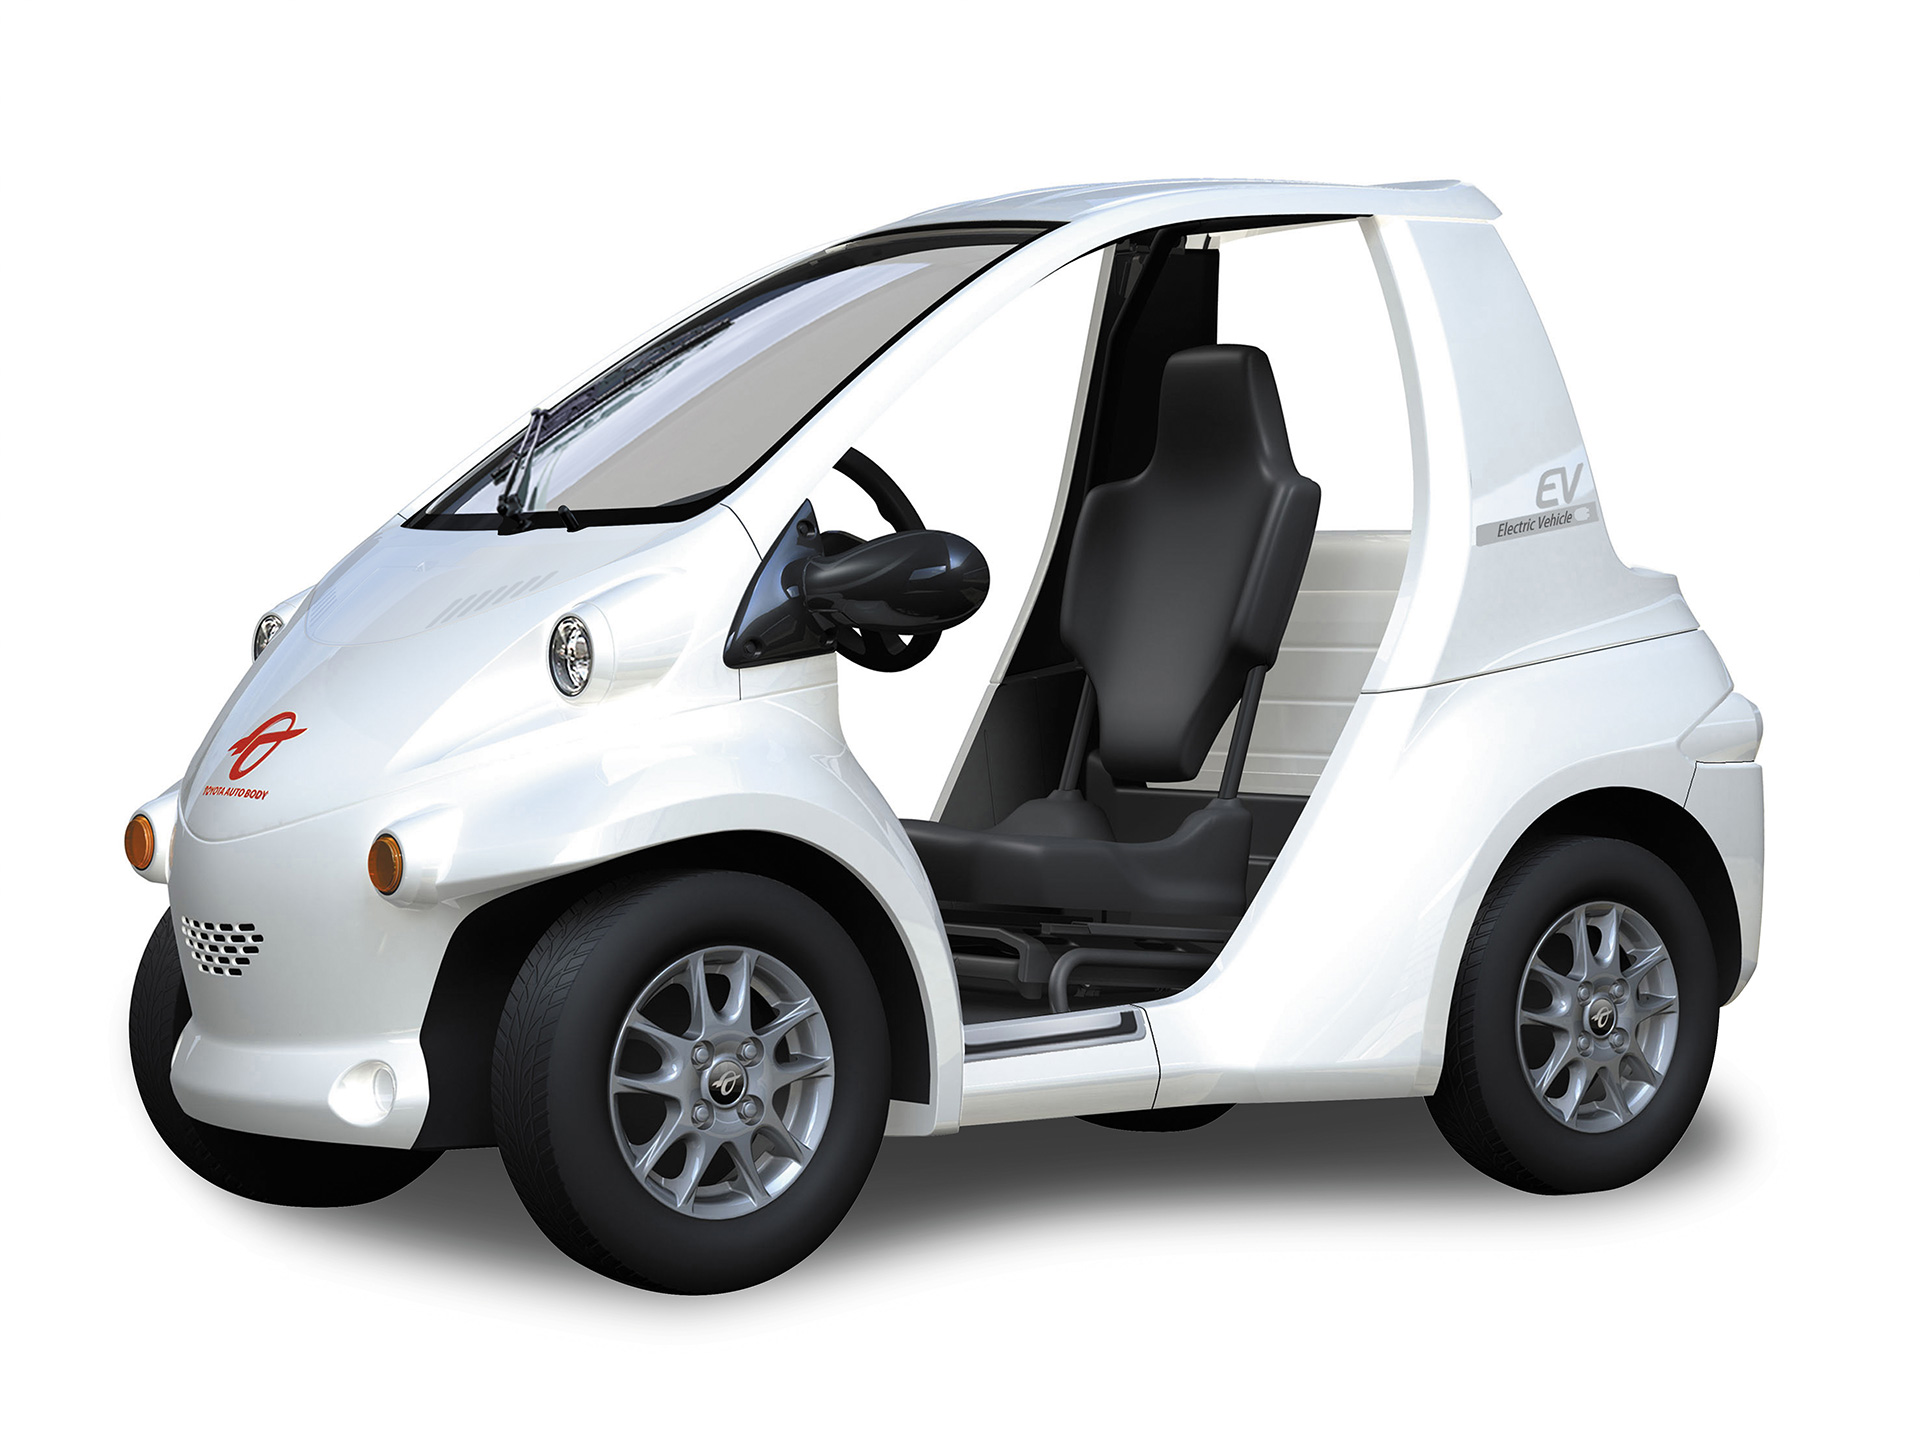 マイクロカー ミニカー は原付免許で運転できる おすすめ車種3選 Moby モビー